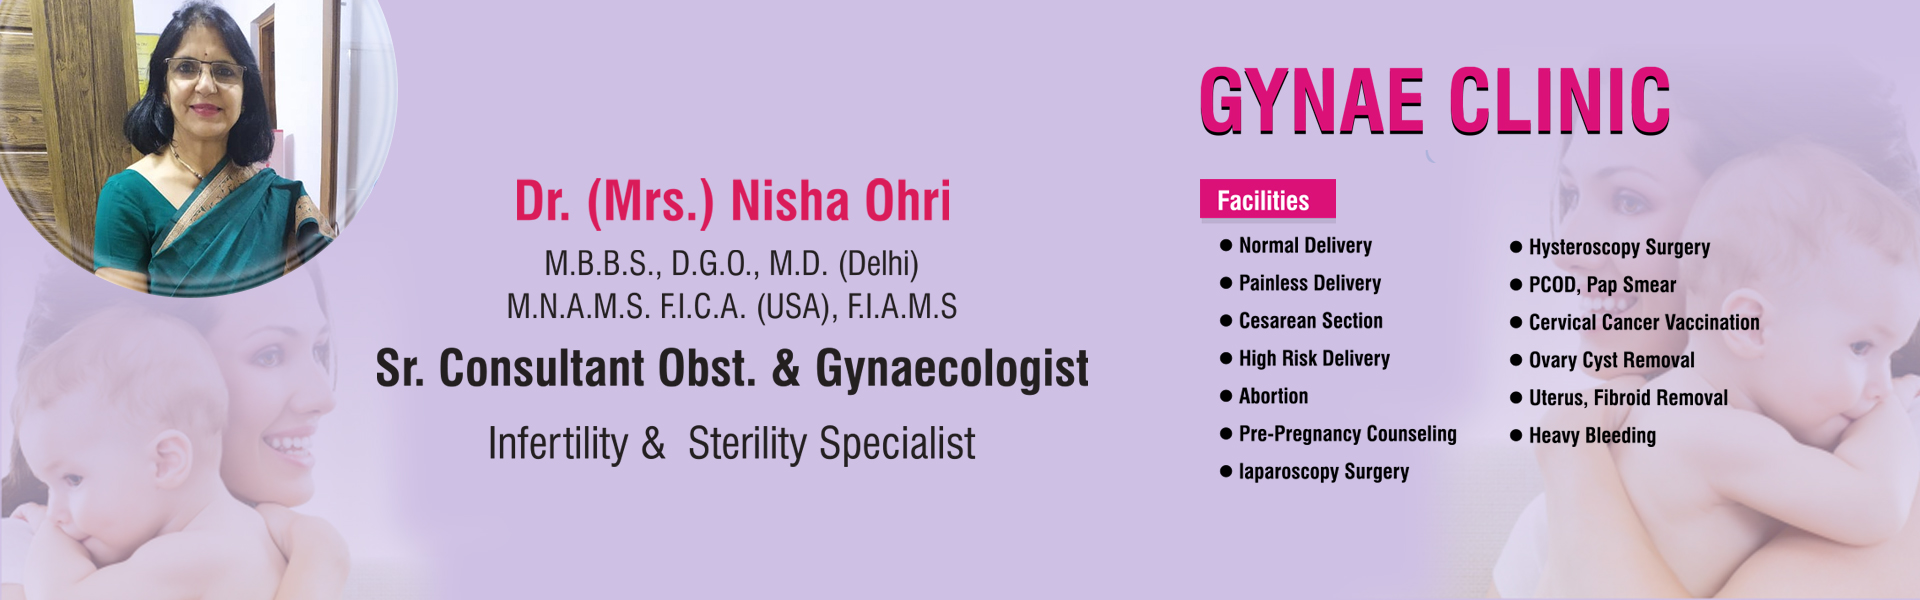  Best Gynae in Delhi | Dr. Nisha Ohri